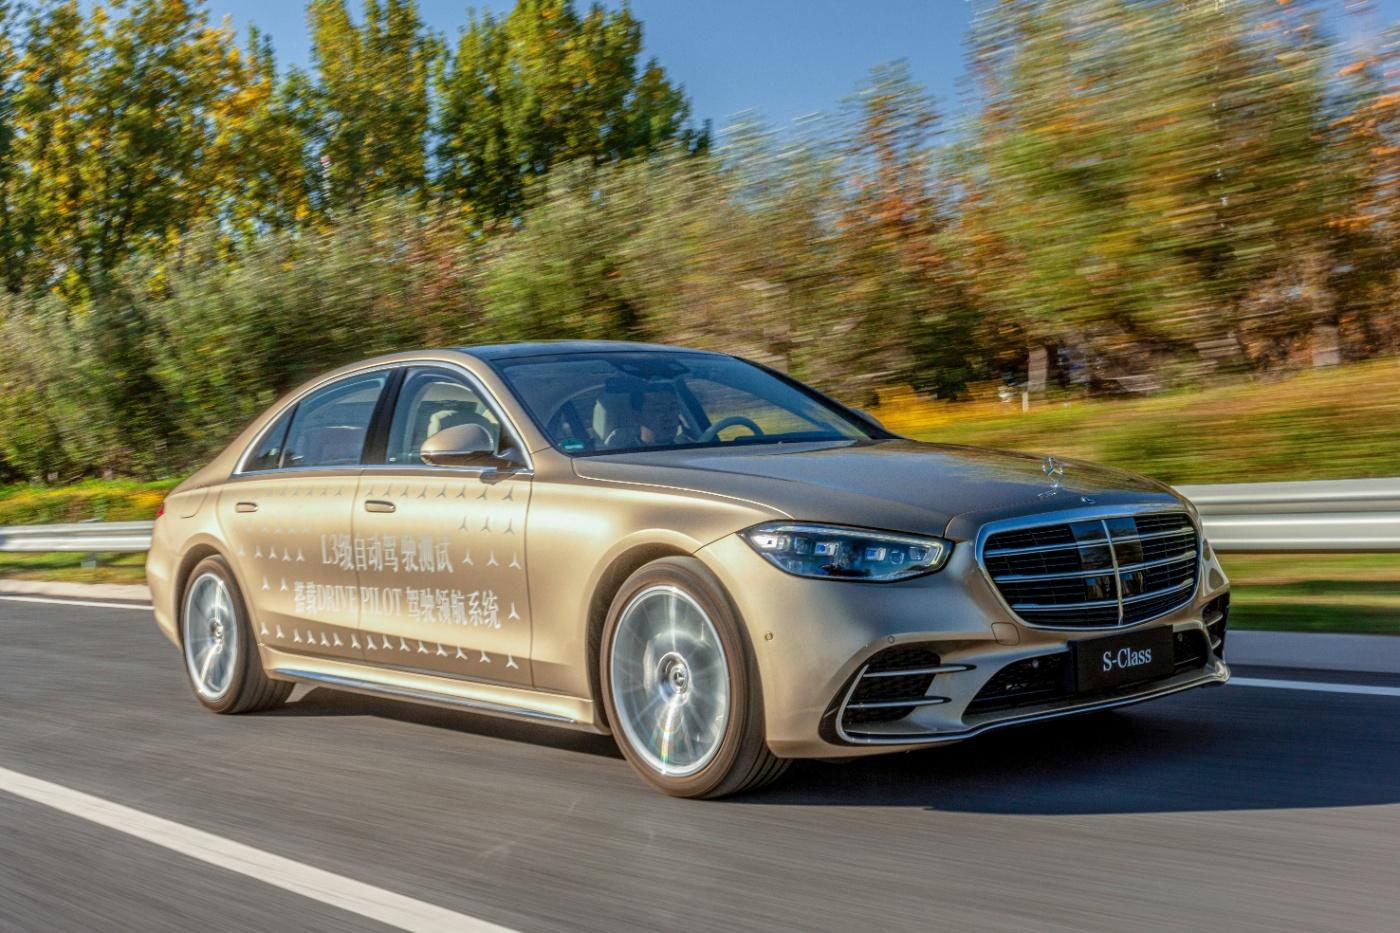 Mercedes-Benz erhält offizielle Genehmigung zum Testen hochautomatisierter Fahrsysteme (Level 3) in Peking.